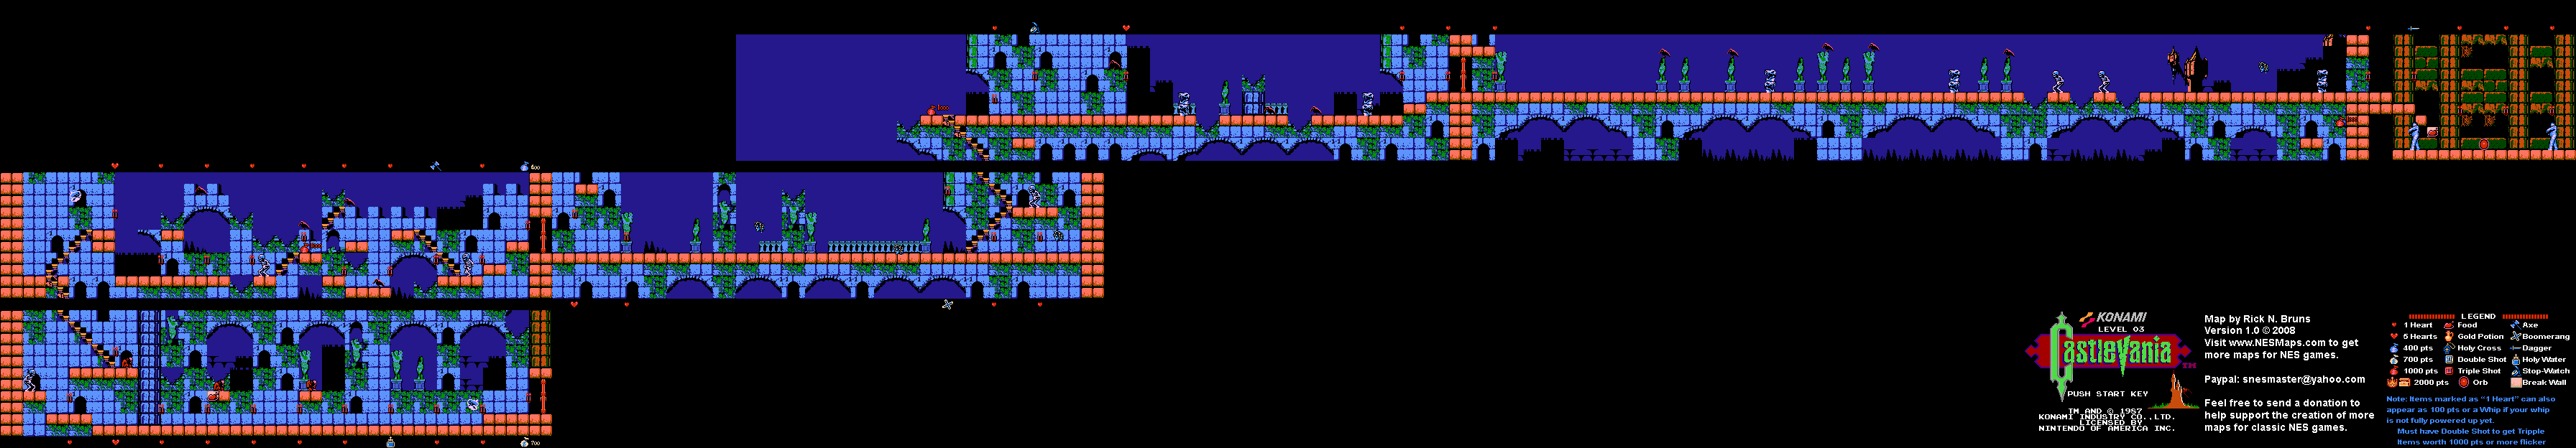 Castlevania - Level 3 Nintendo NES Map